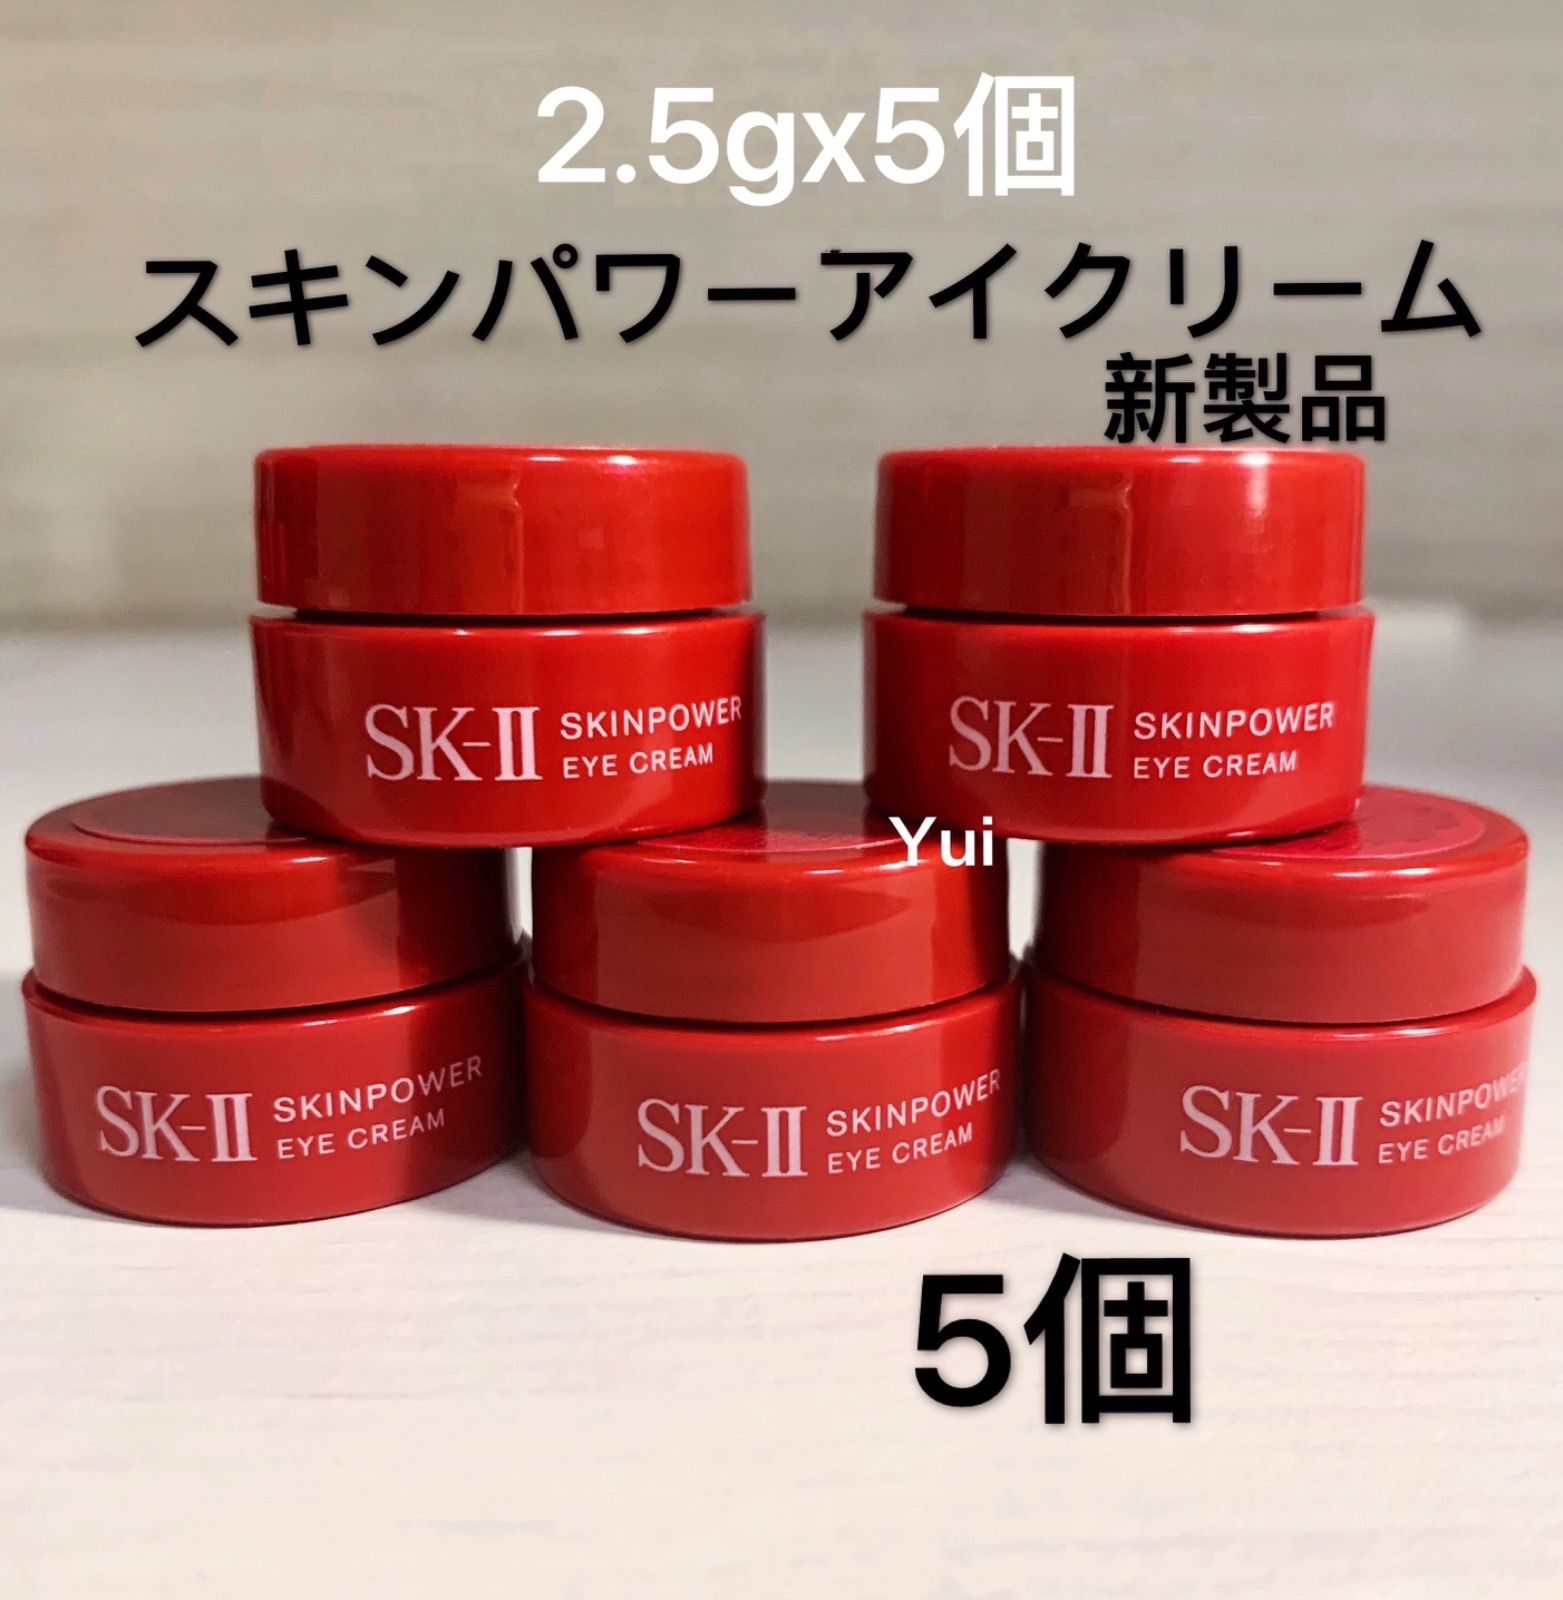 SKII スキンパワーアイクリーム 15g - アイケア